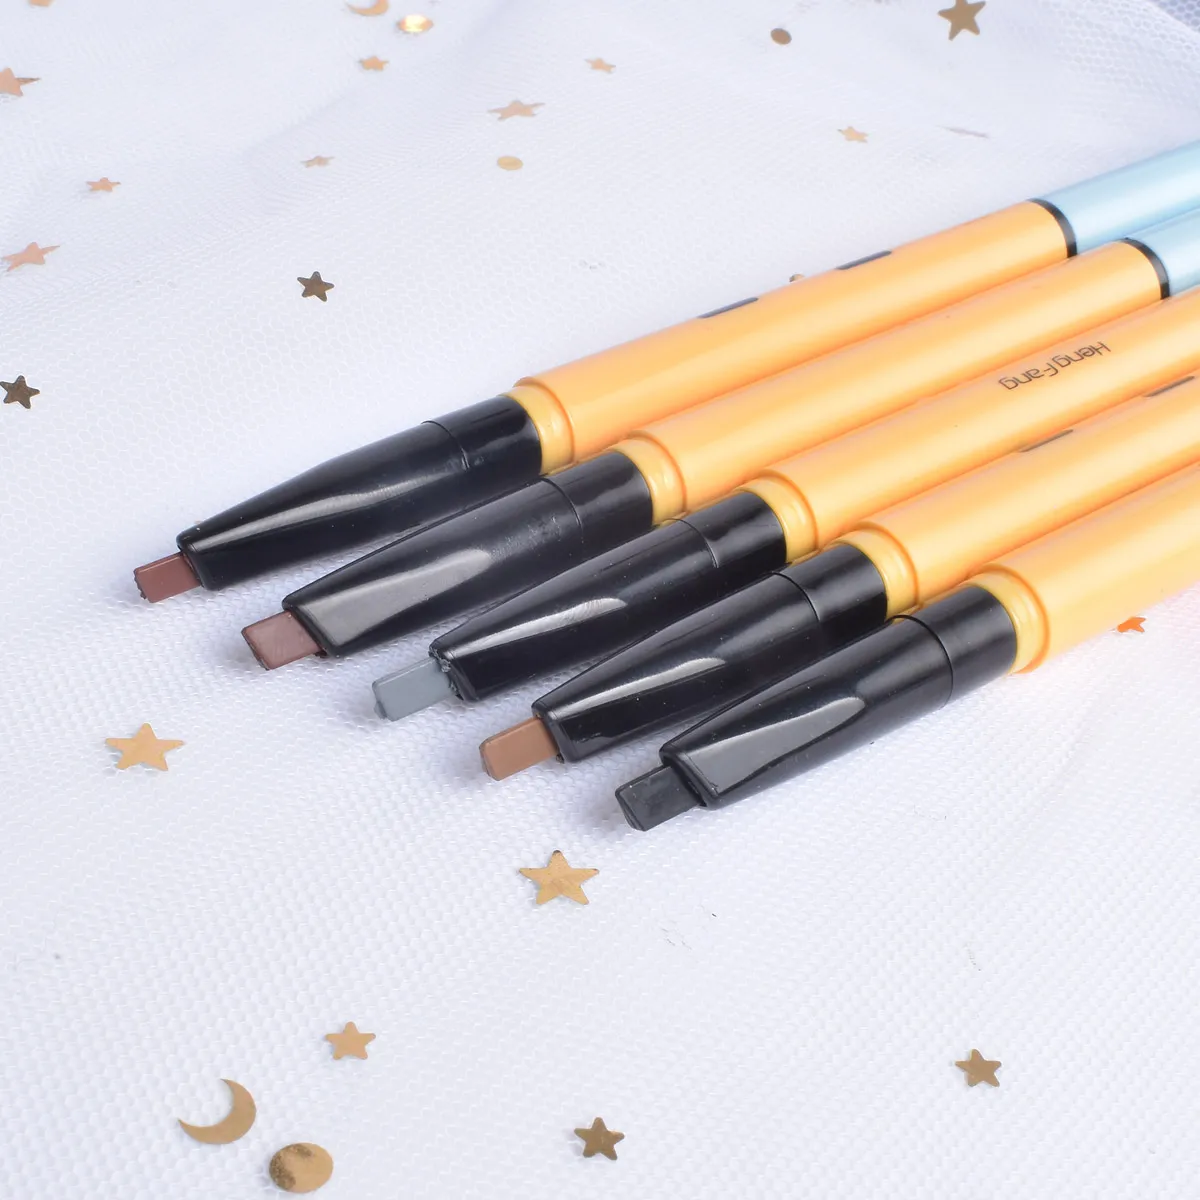 5 цветов, стойкий водостойкий автоматический карандаш для бровей, мягкий и гладкий модный карандаш для глаз, 0,14 г, макияж, бренд HengFang# H6533